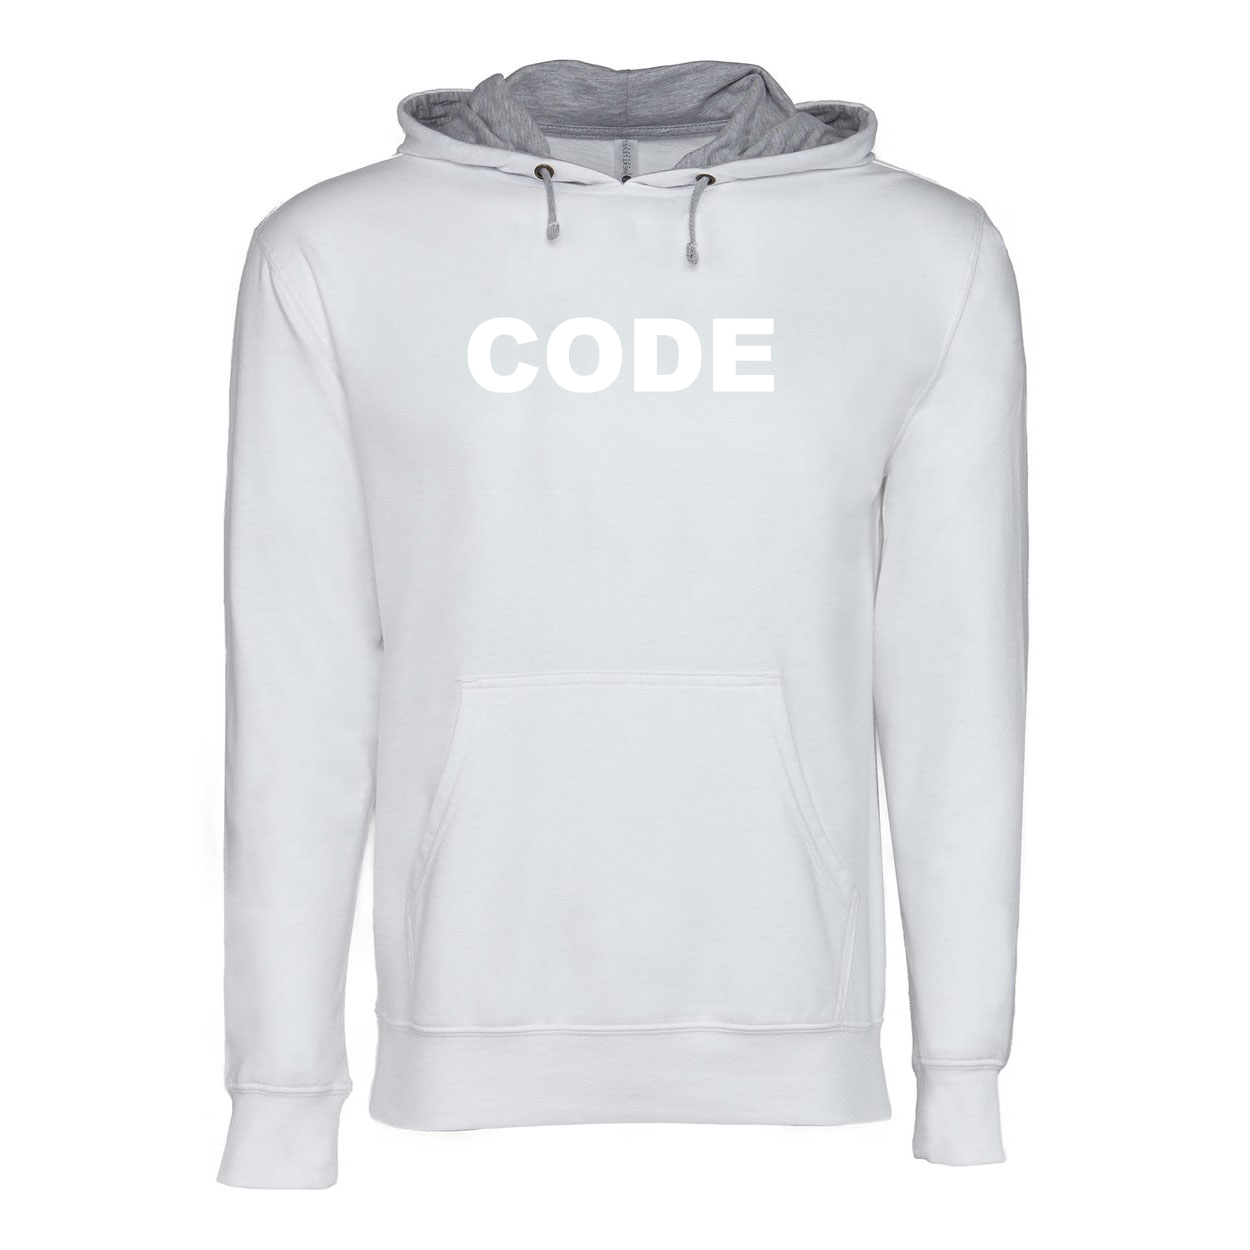 Code Brand Logo Classic Lightweight Sweatshirt White/Heather Gray 